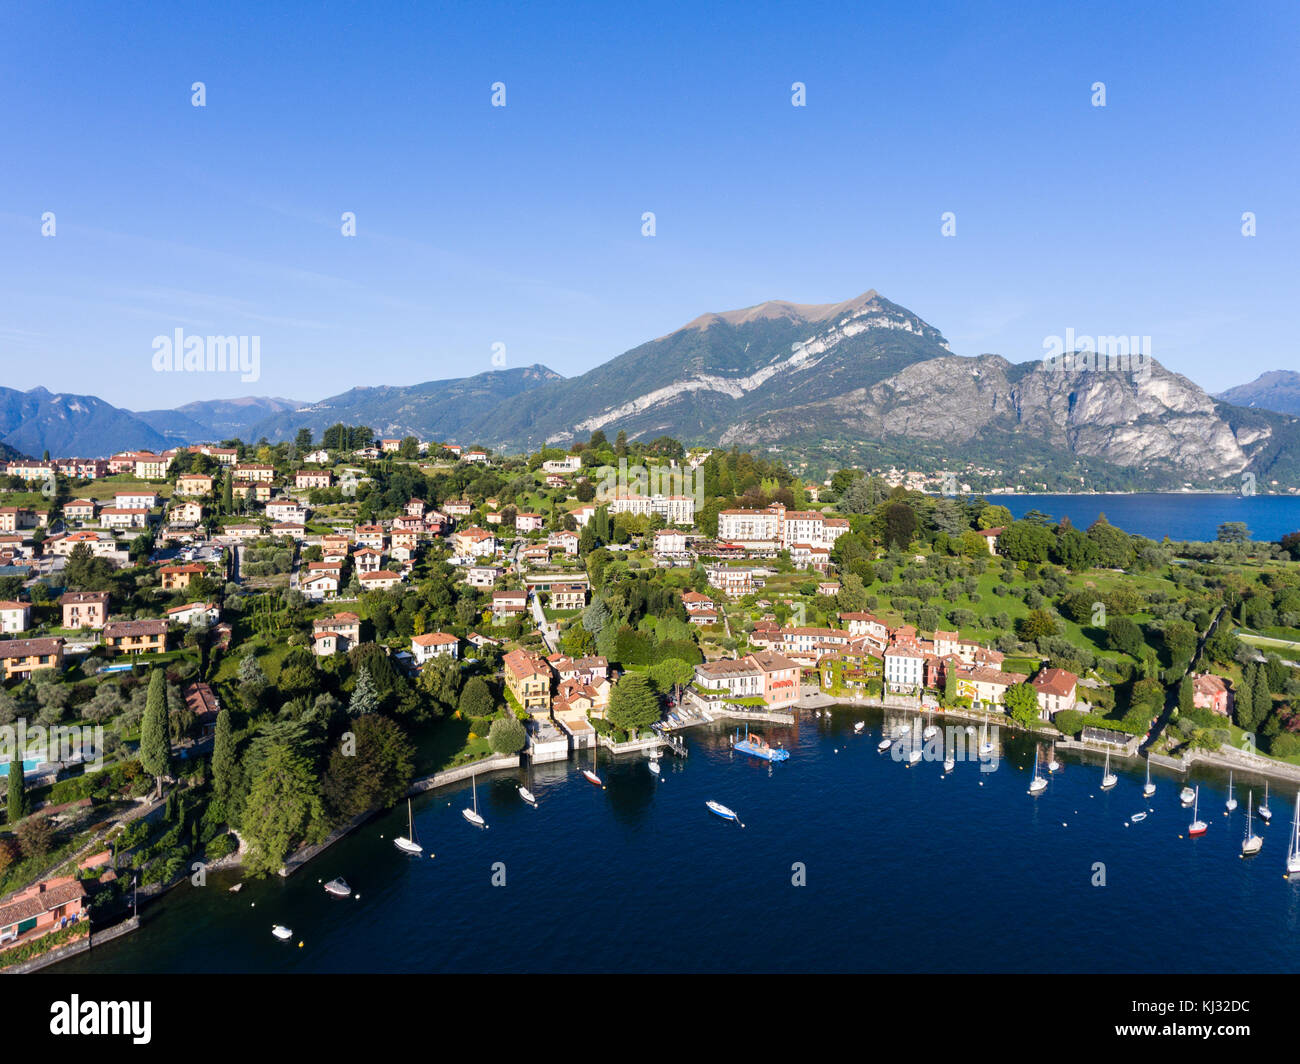 Touristische Destination am Comer See, Dorf pescallo in der Nähe von bellagio in Italien Stockfoto